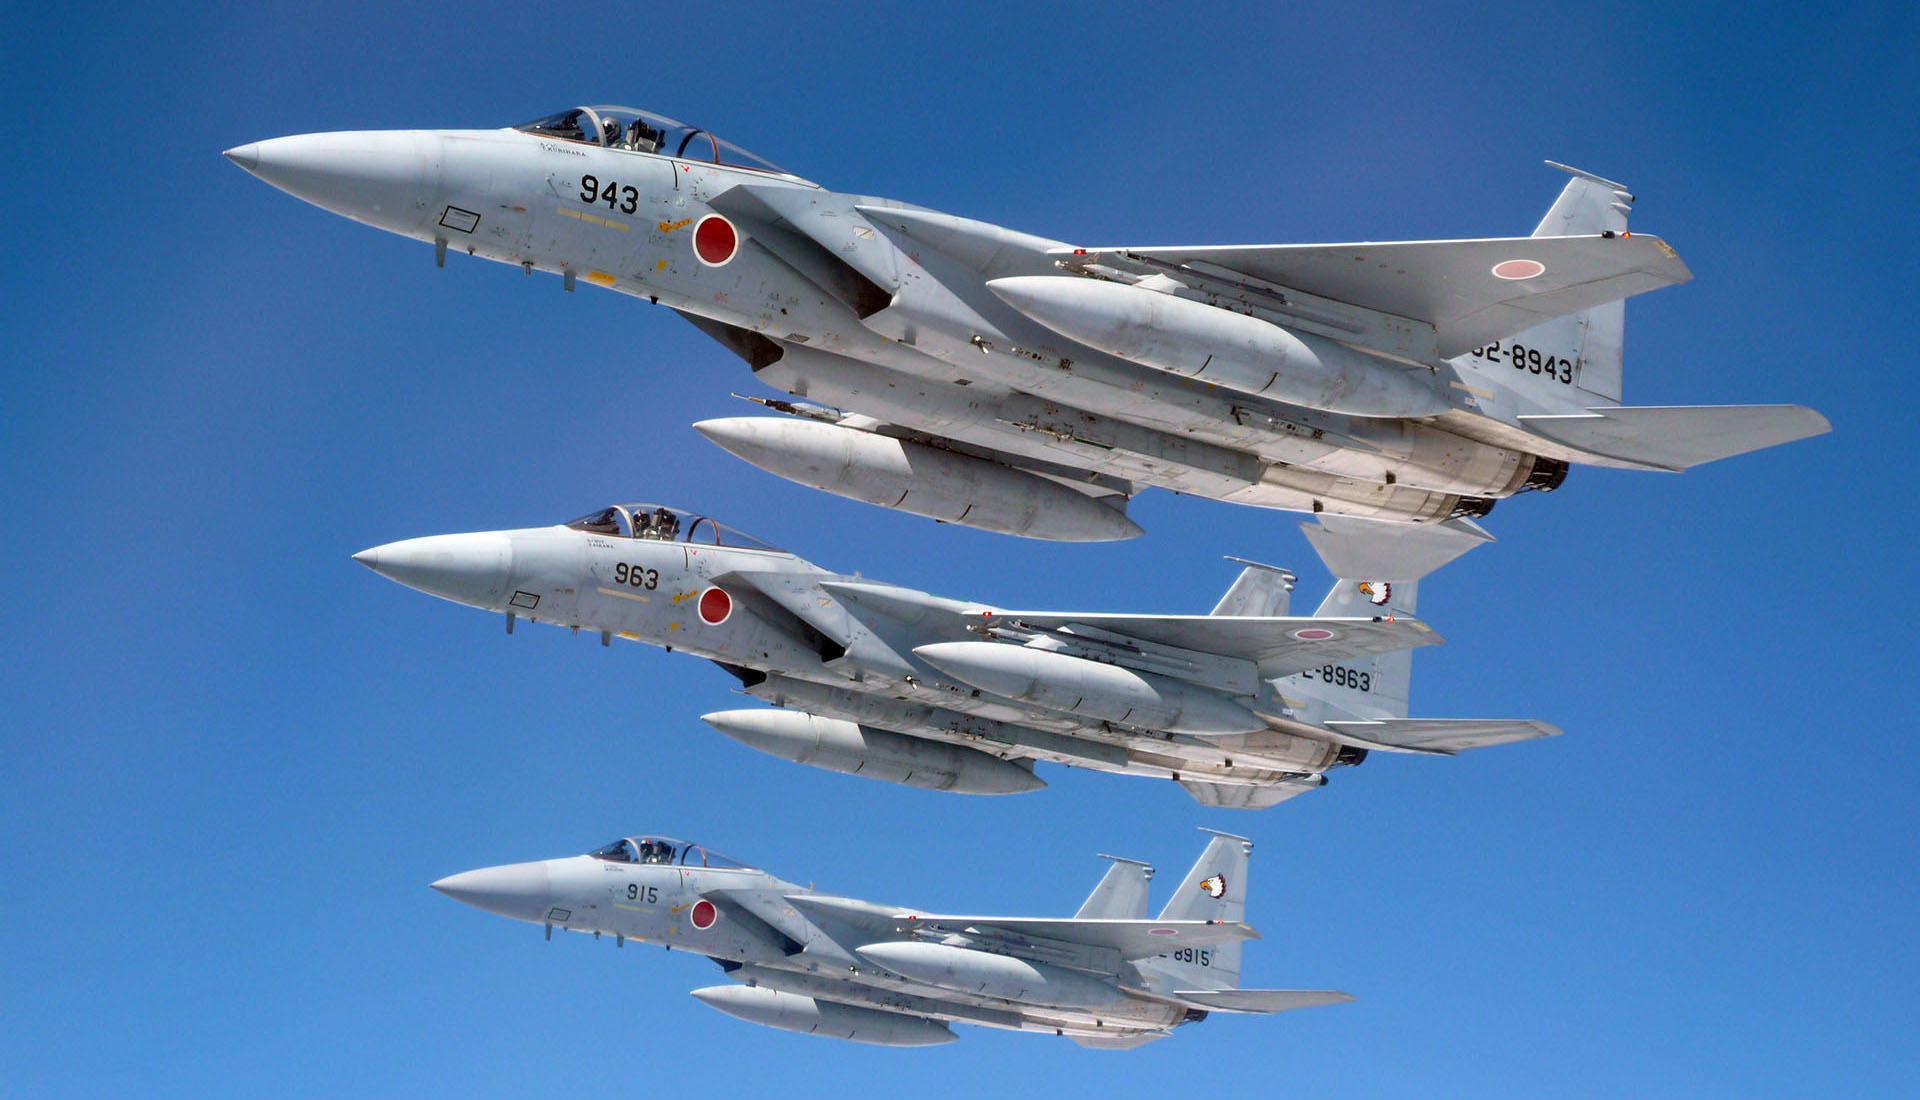 Jato de combate F-15 será limitado em Flight Simulator por ser rápido demais